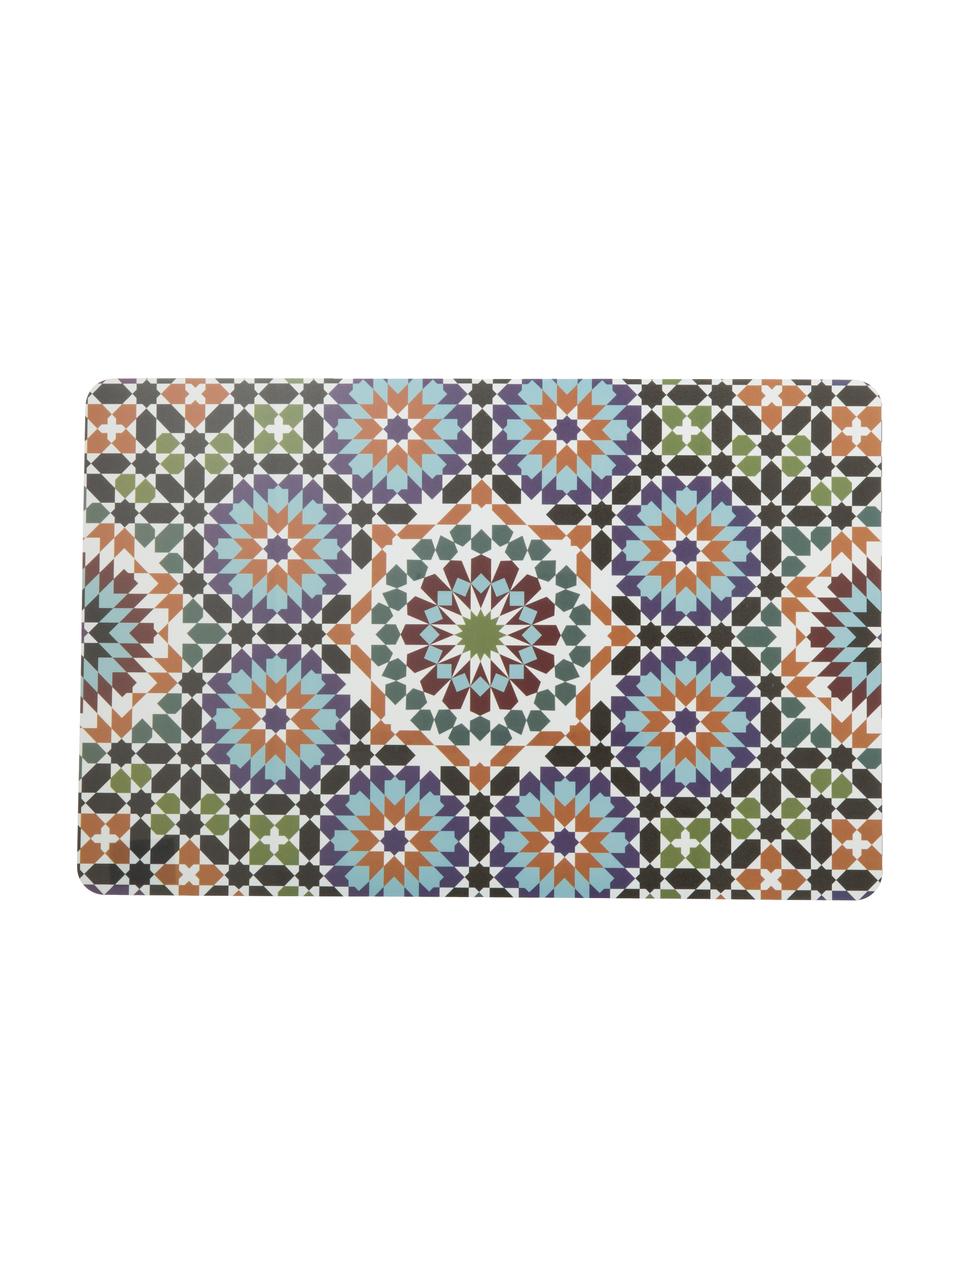 Set de manteles individuales Marrakech, 6 uds.., Plástico, Multicolor, An 28 x L 44 cm